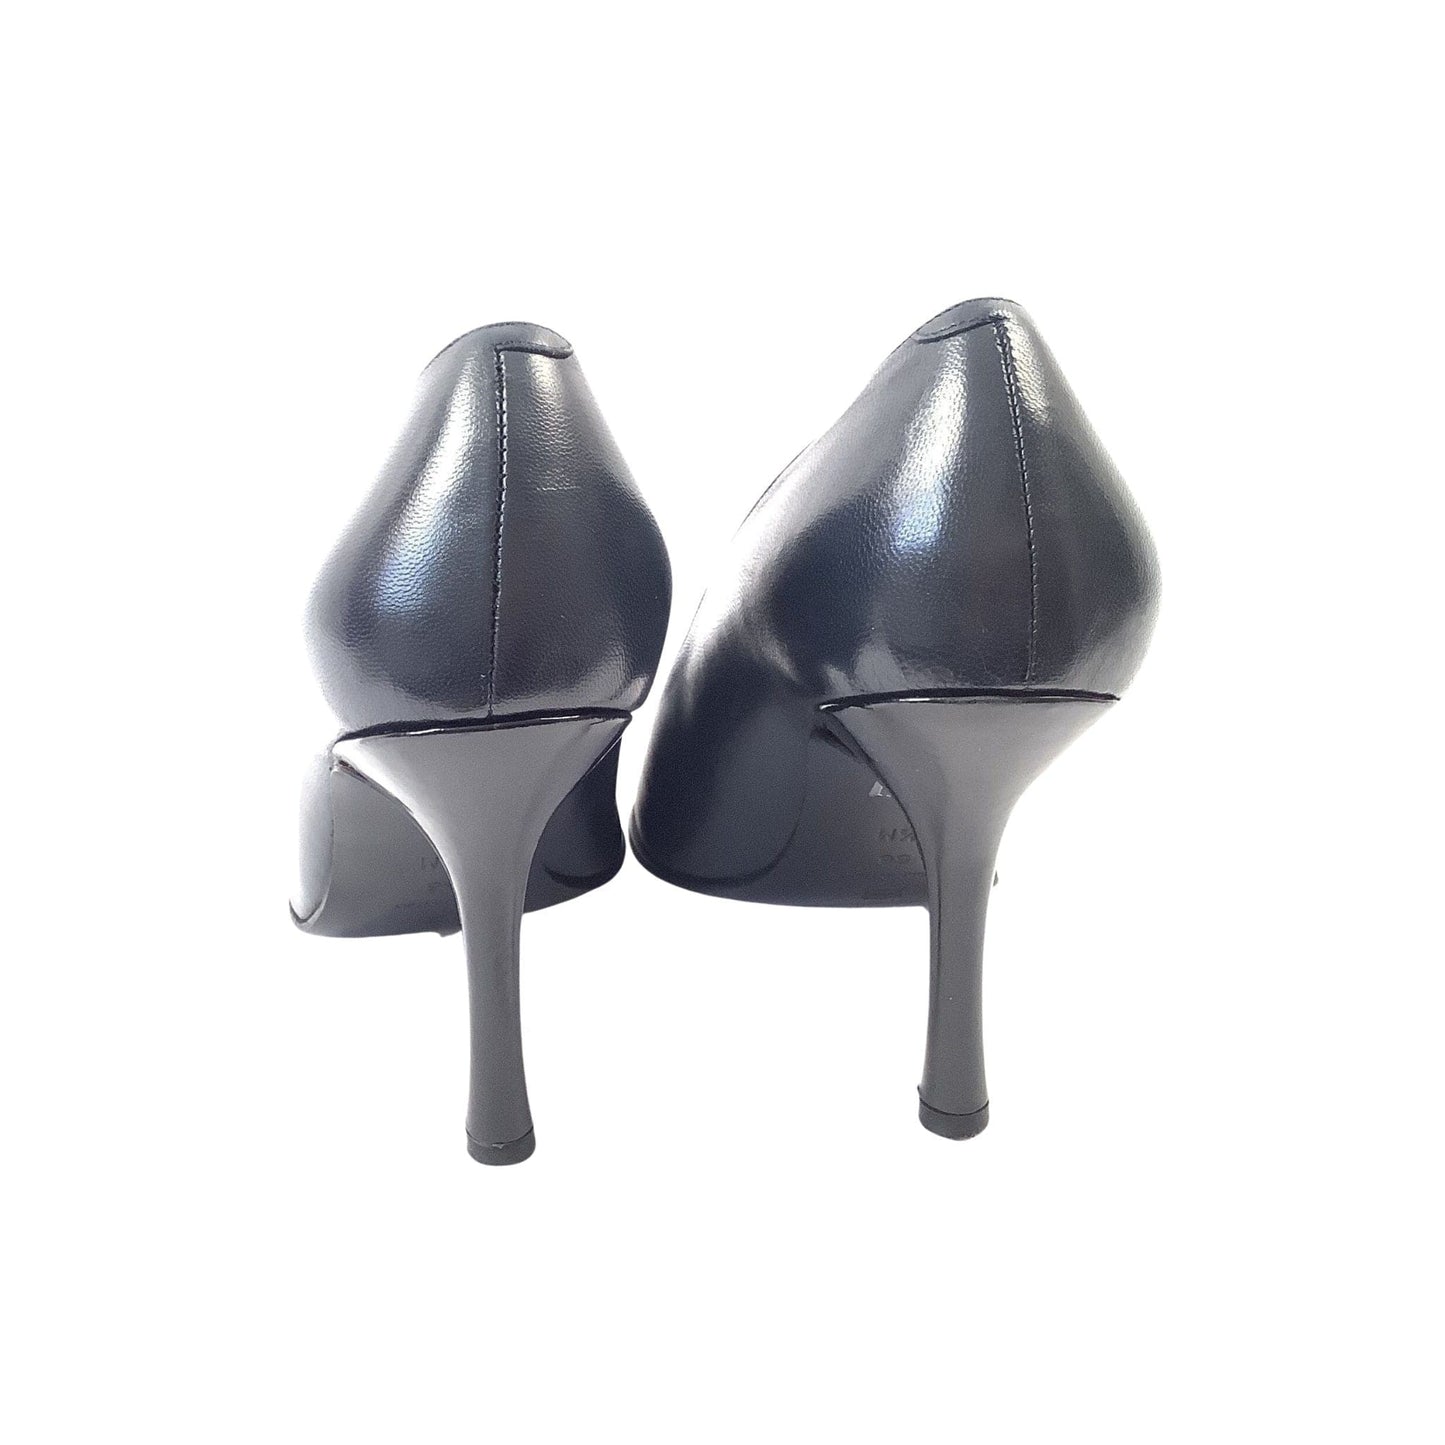 Pointed Toe Black Heels 8.5 / Multi / Y2K - Now